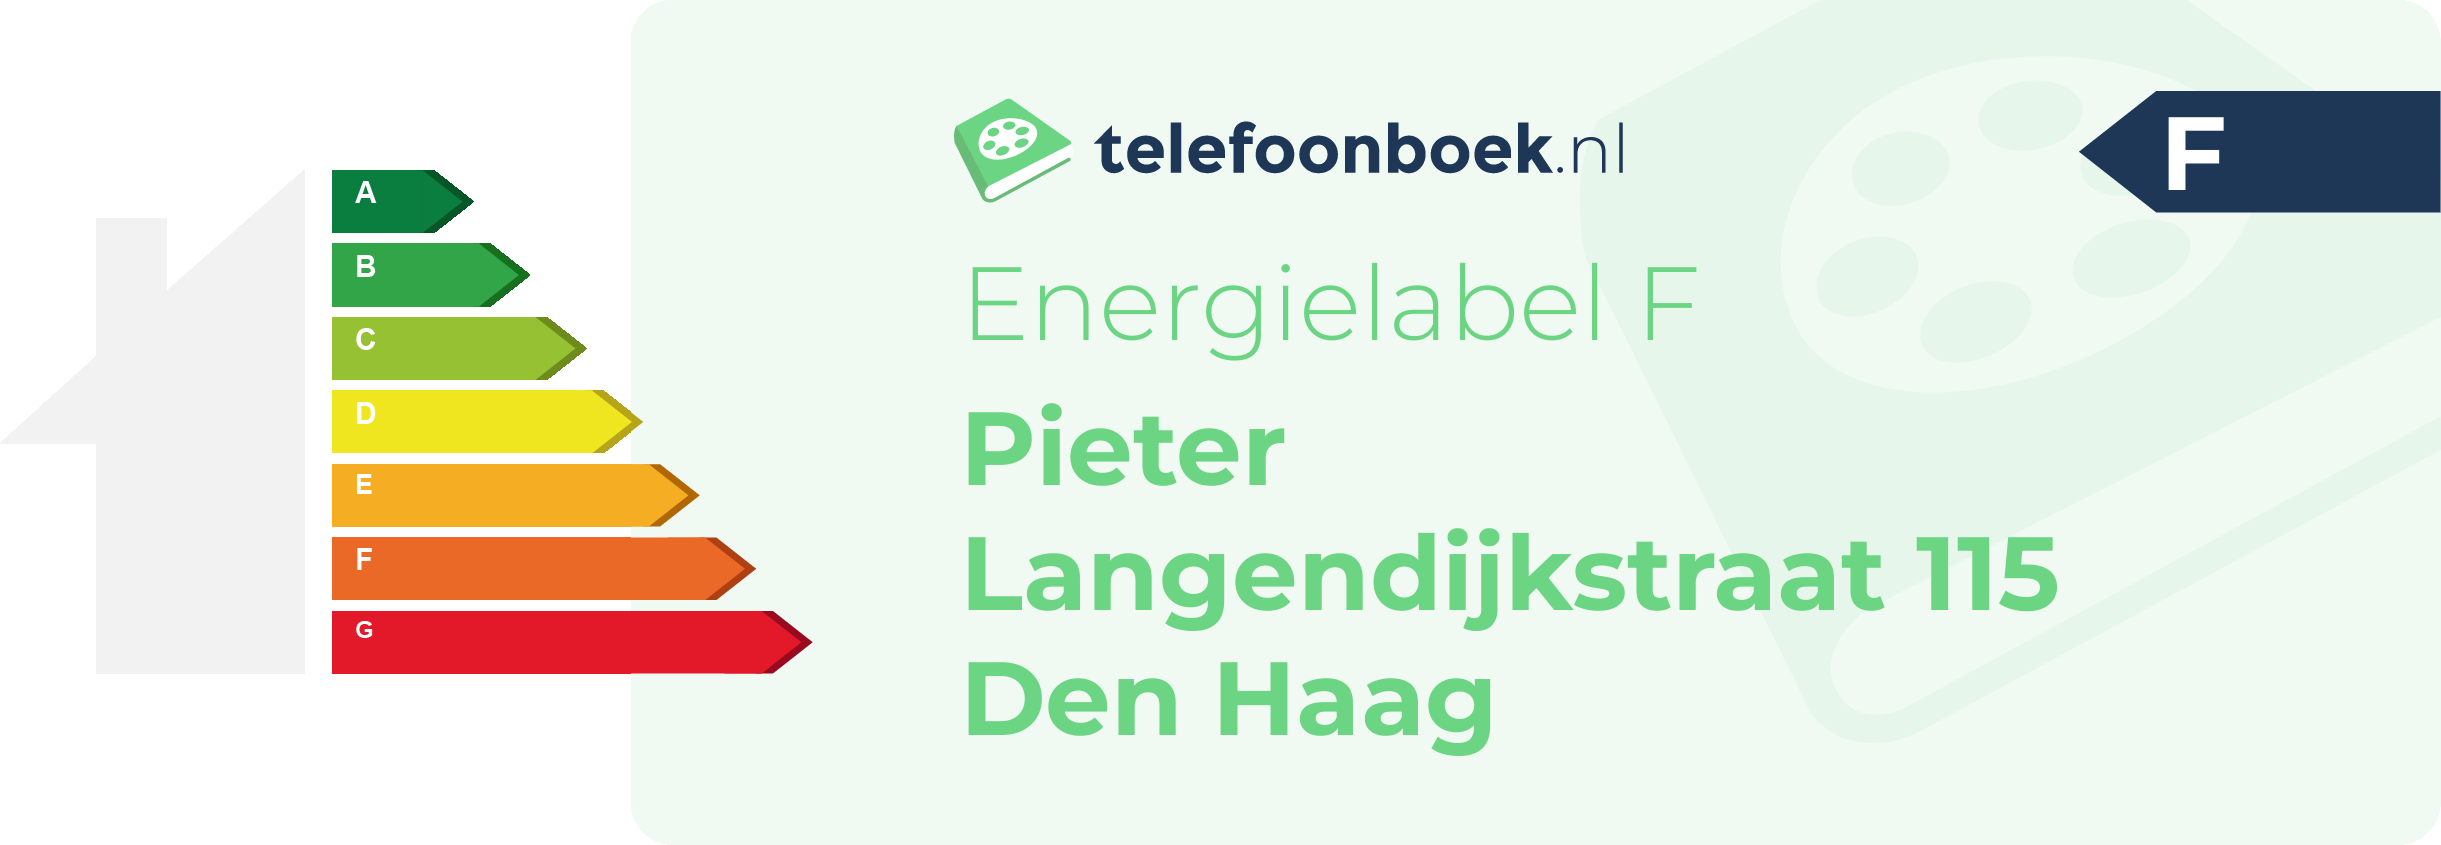 Energielabel Pieter Langendijkstraat 115 Den Haag